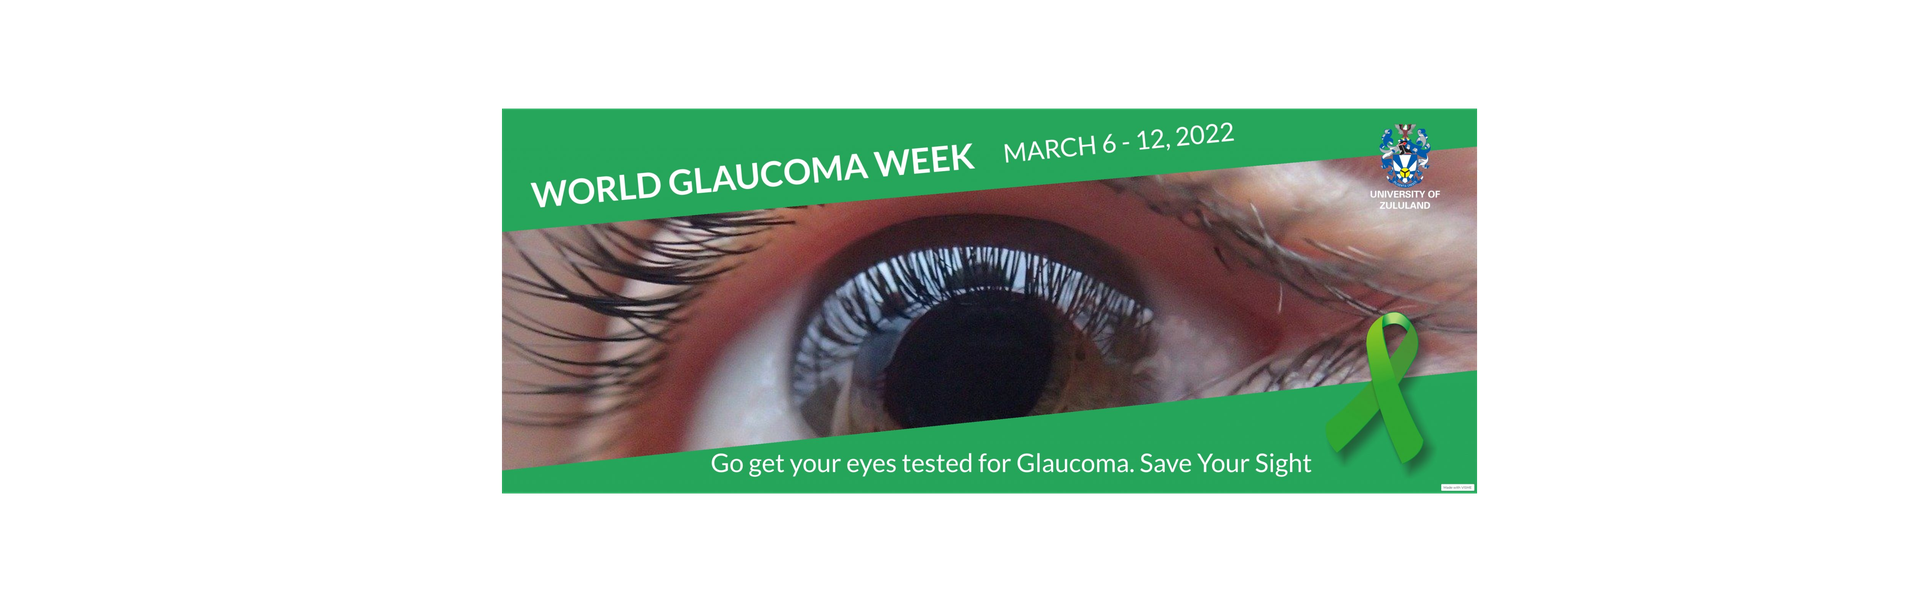 thumbnails World Glaucoma Week 2022